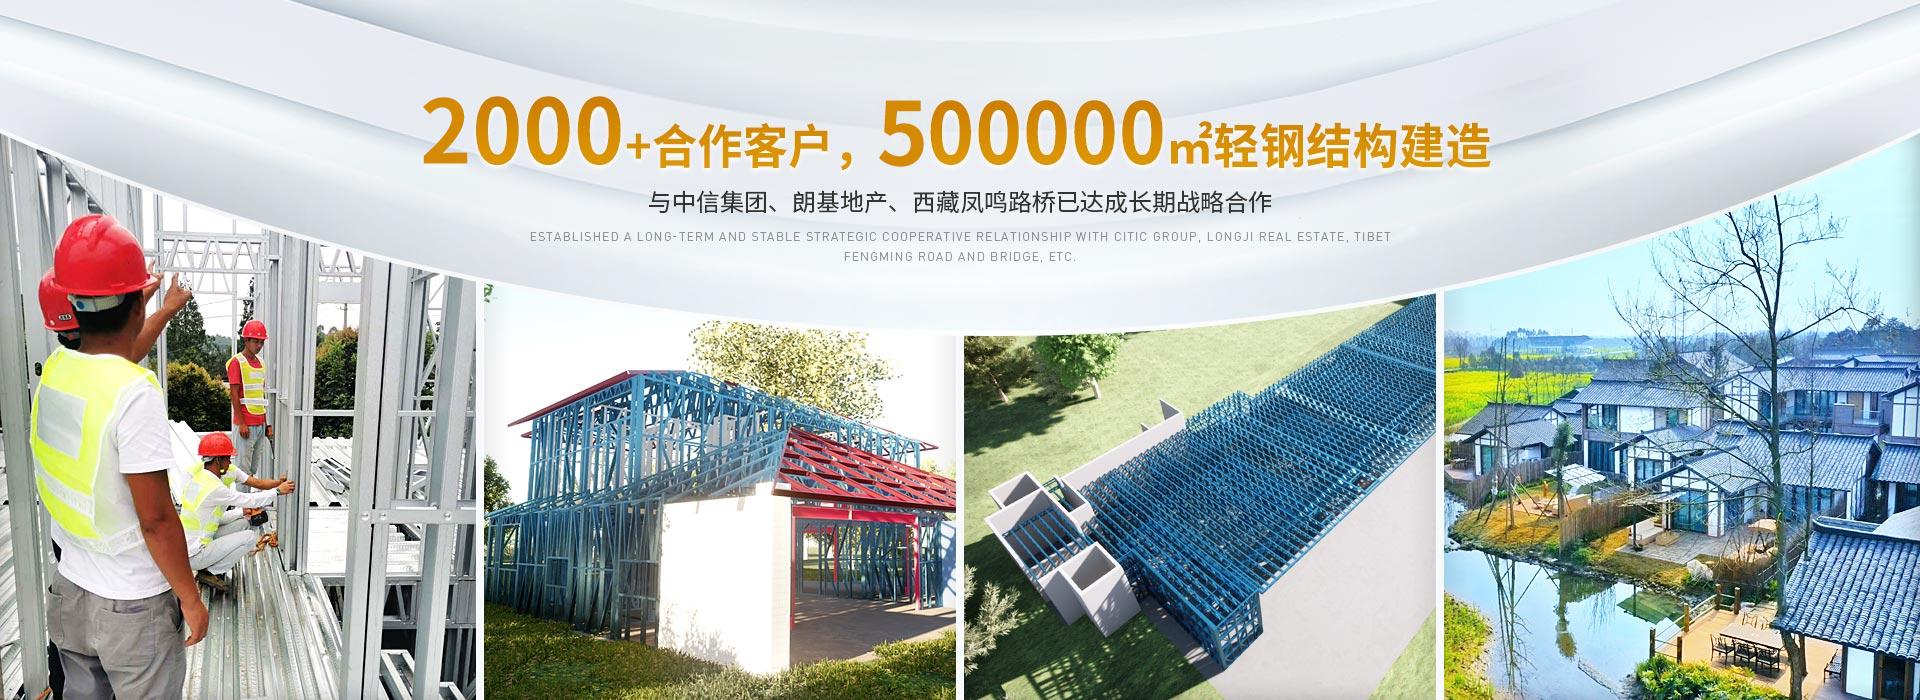 j9九游真人游戏2000+合作客户,500000m²轻钢结构建造